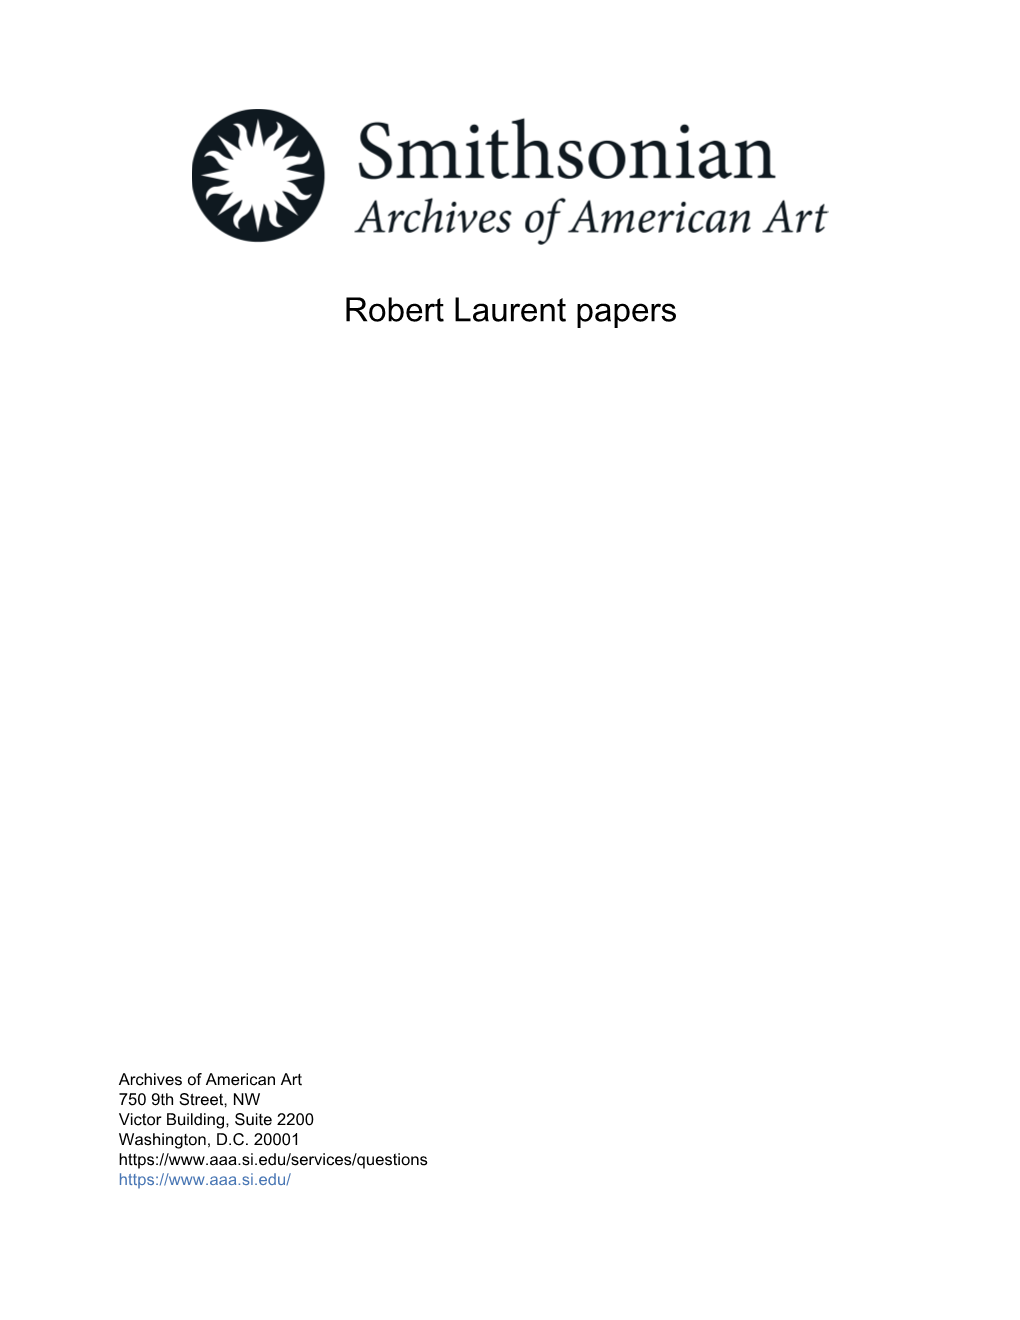 Robert Laurent Papers